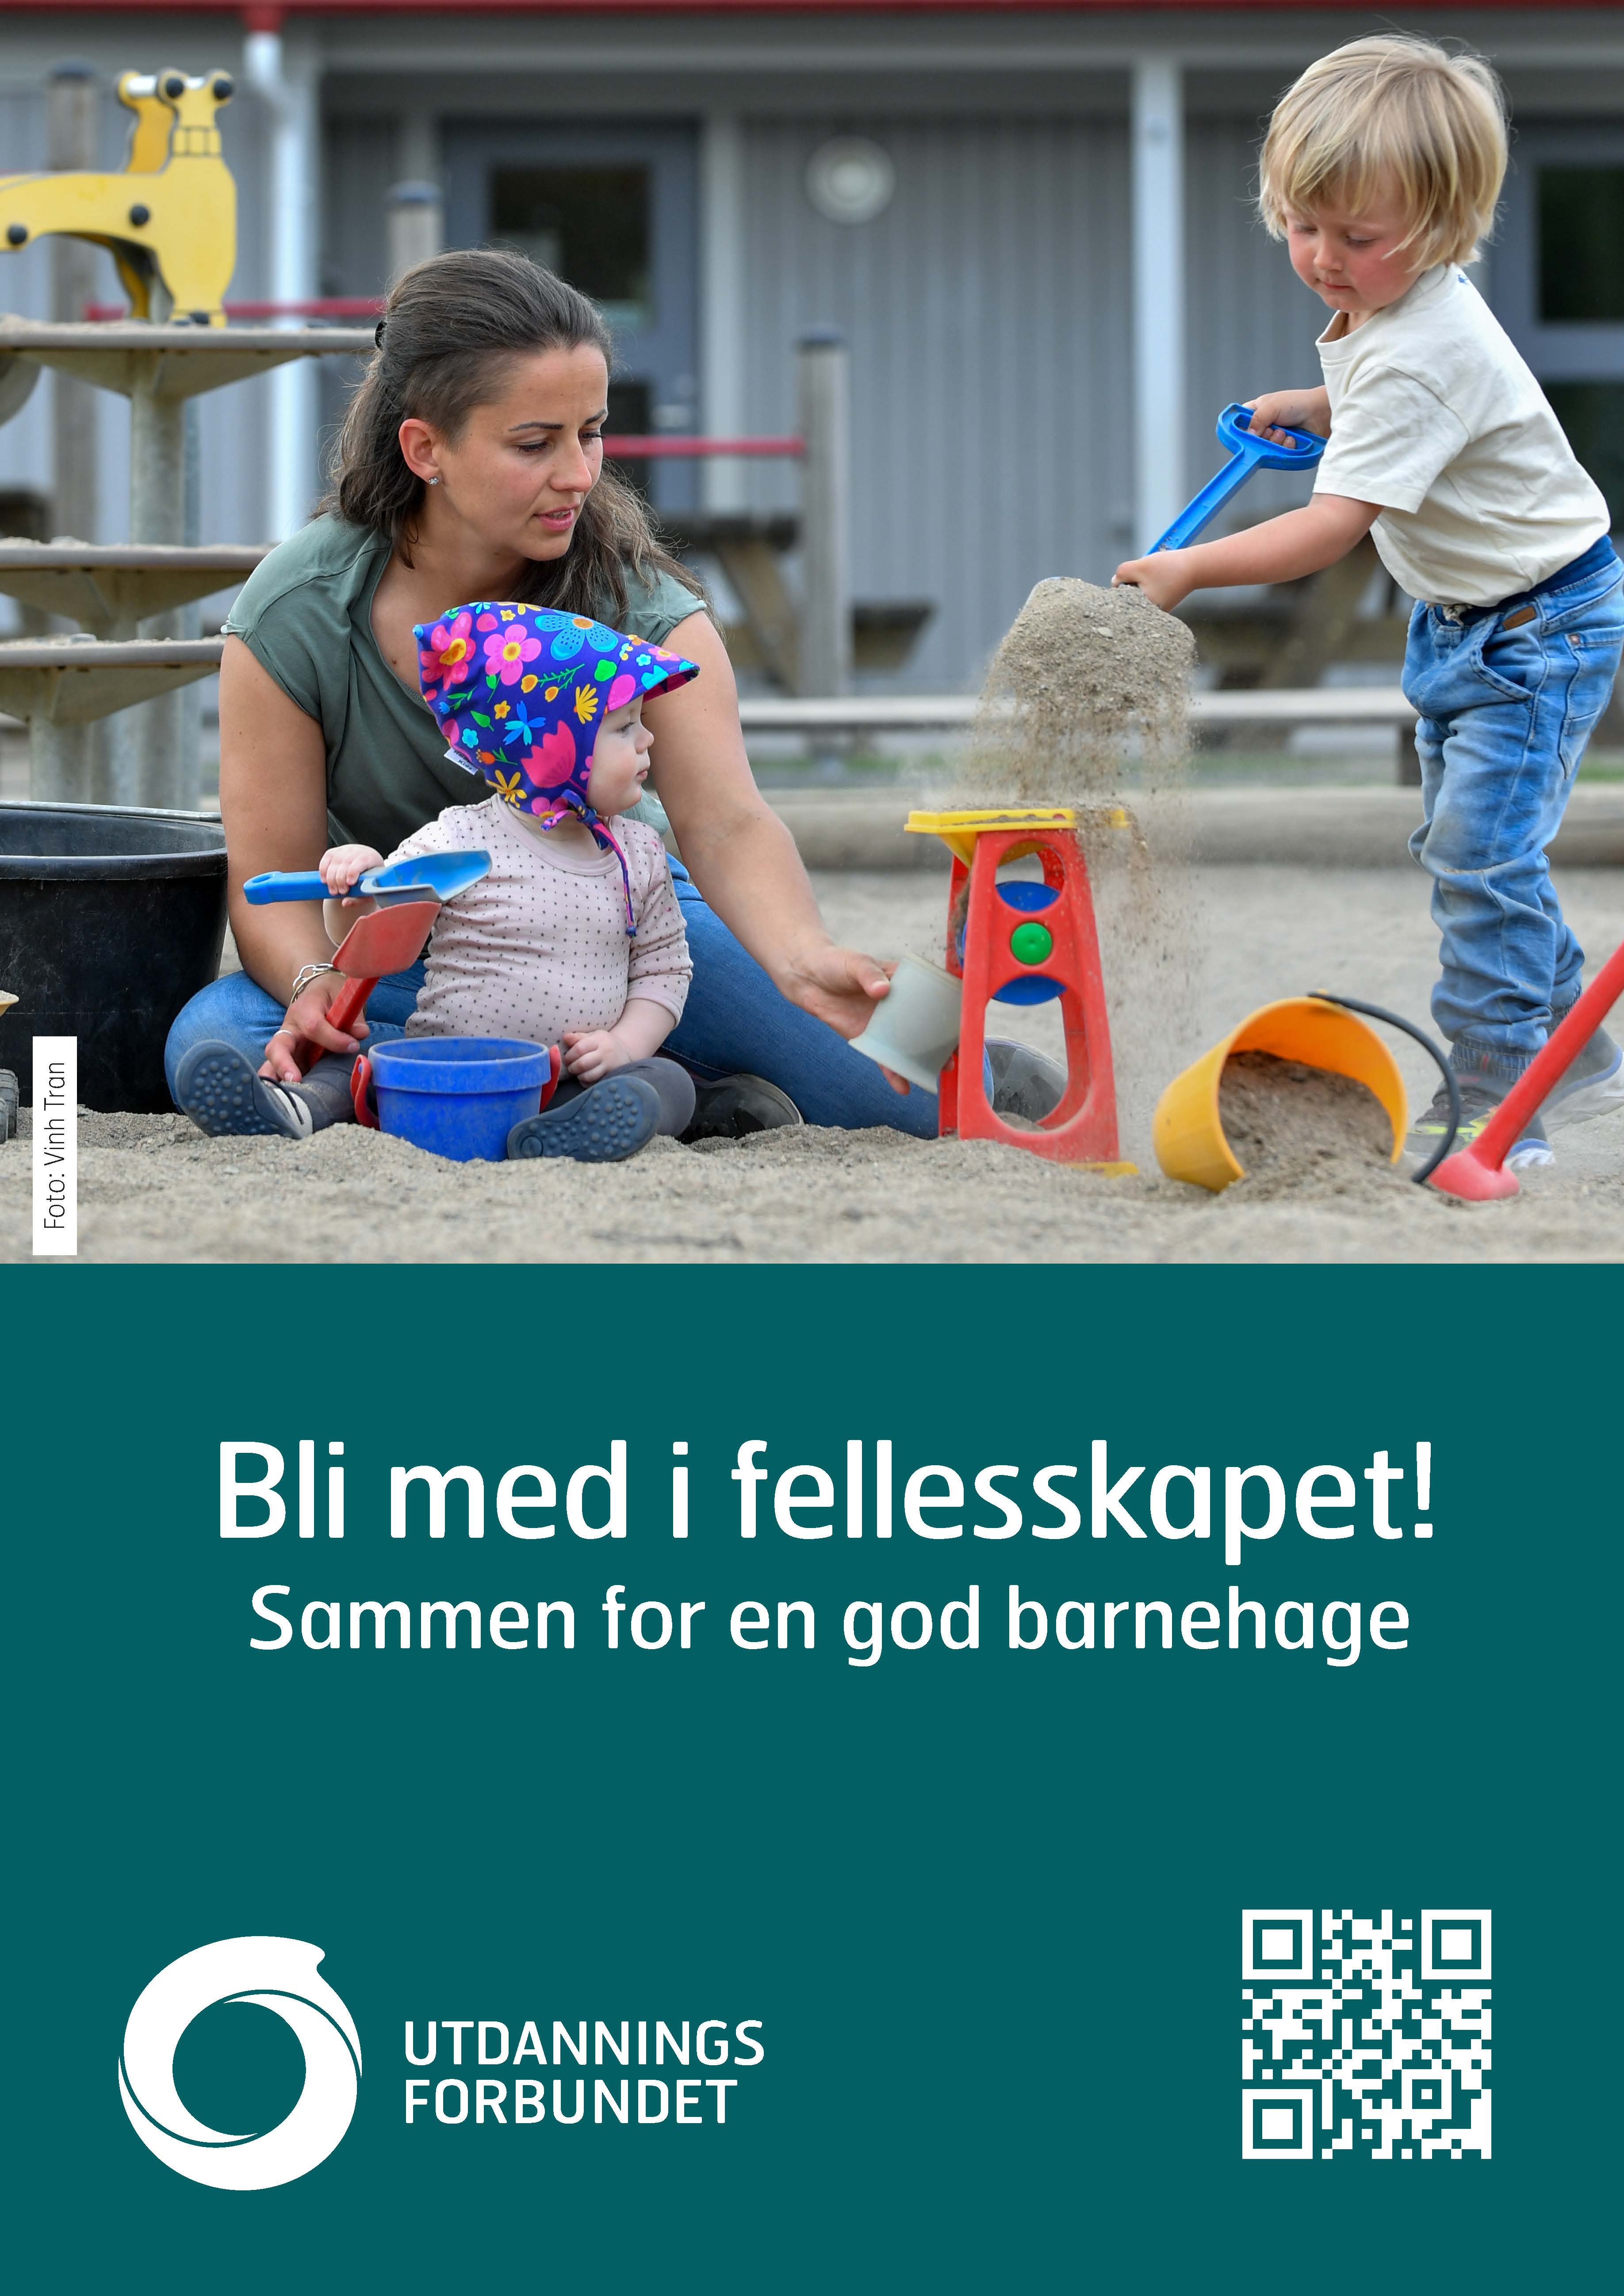 Plakat A3  Bli med i fellesskapet. Barnehage. Bokmål og nynorsk.jpg